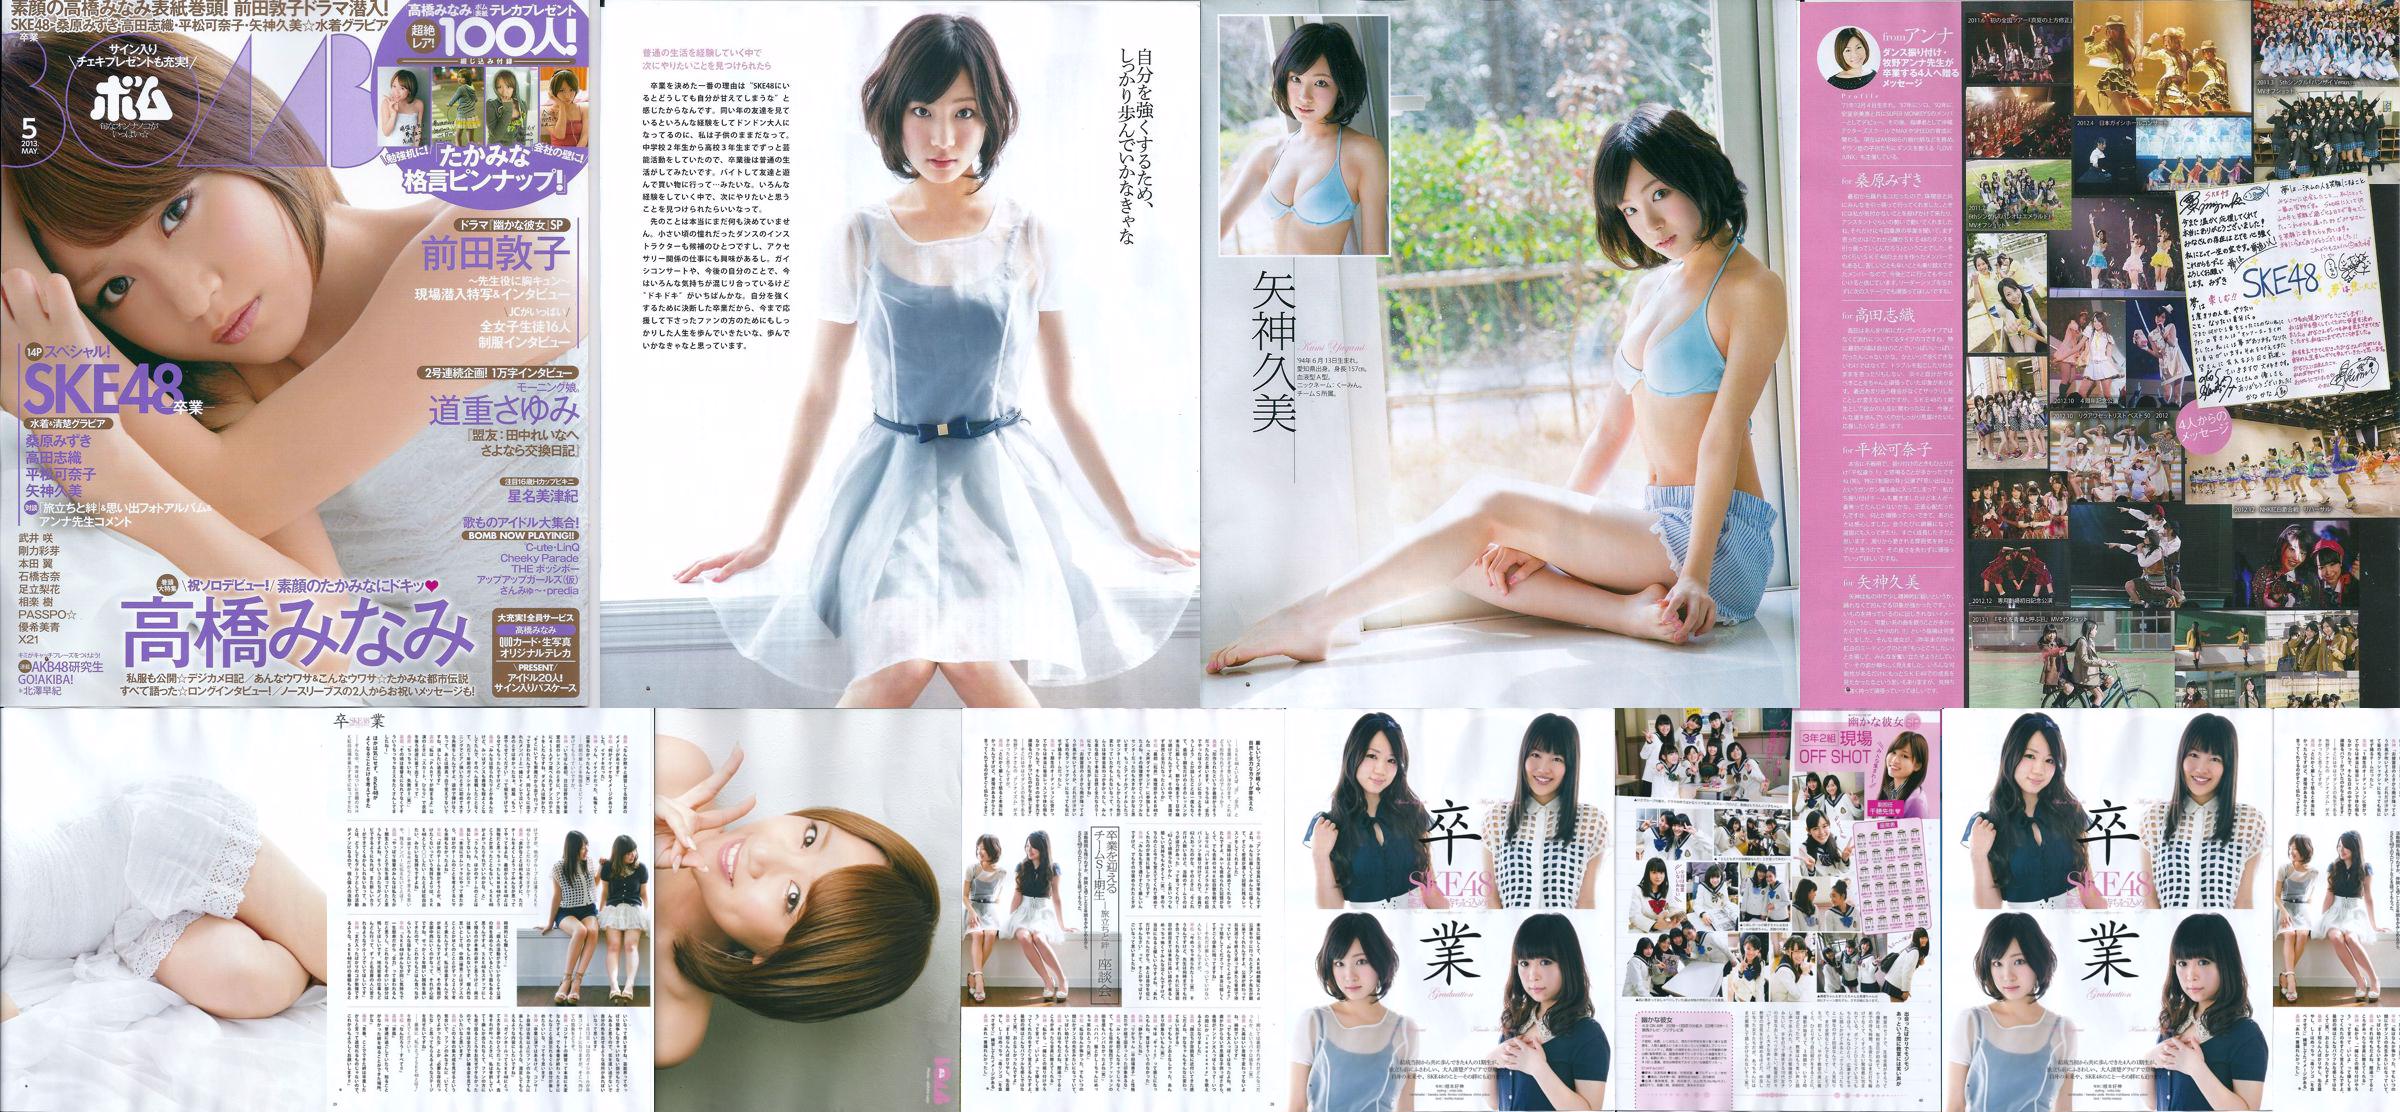 [Bomb Magazine] 2013 No.05 Kumi Yagami Minami Takahashi Atsuko Maeda Photo No.3511e6 Page 3